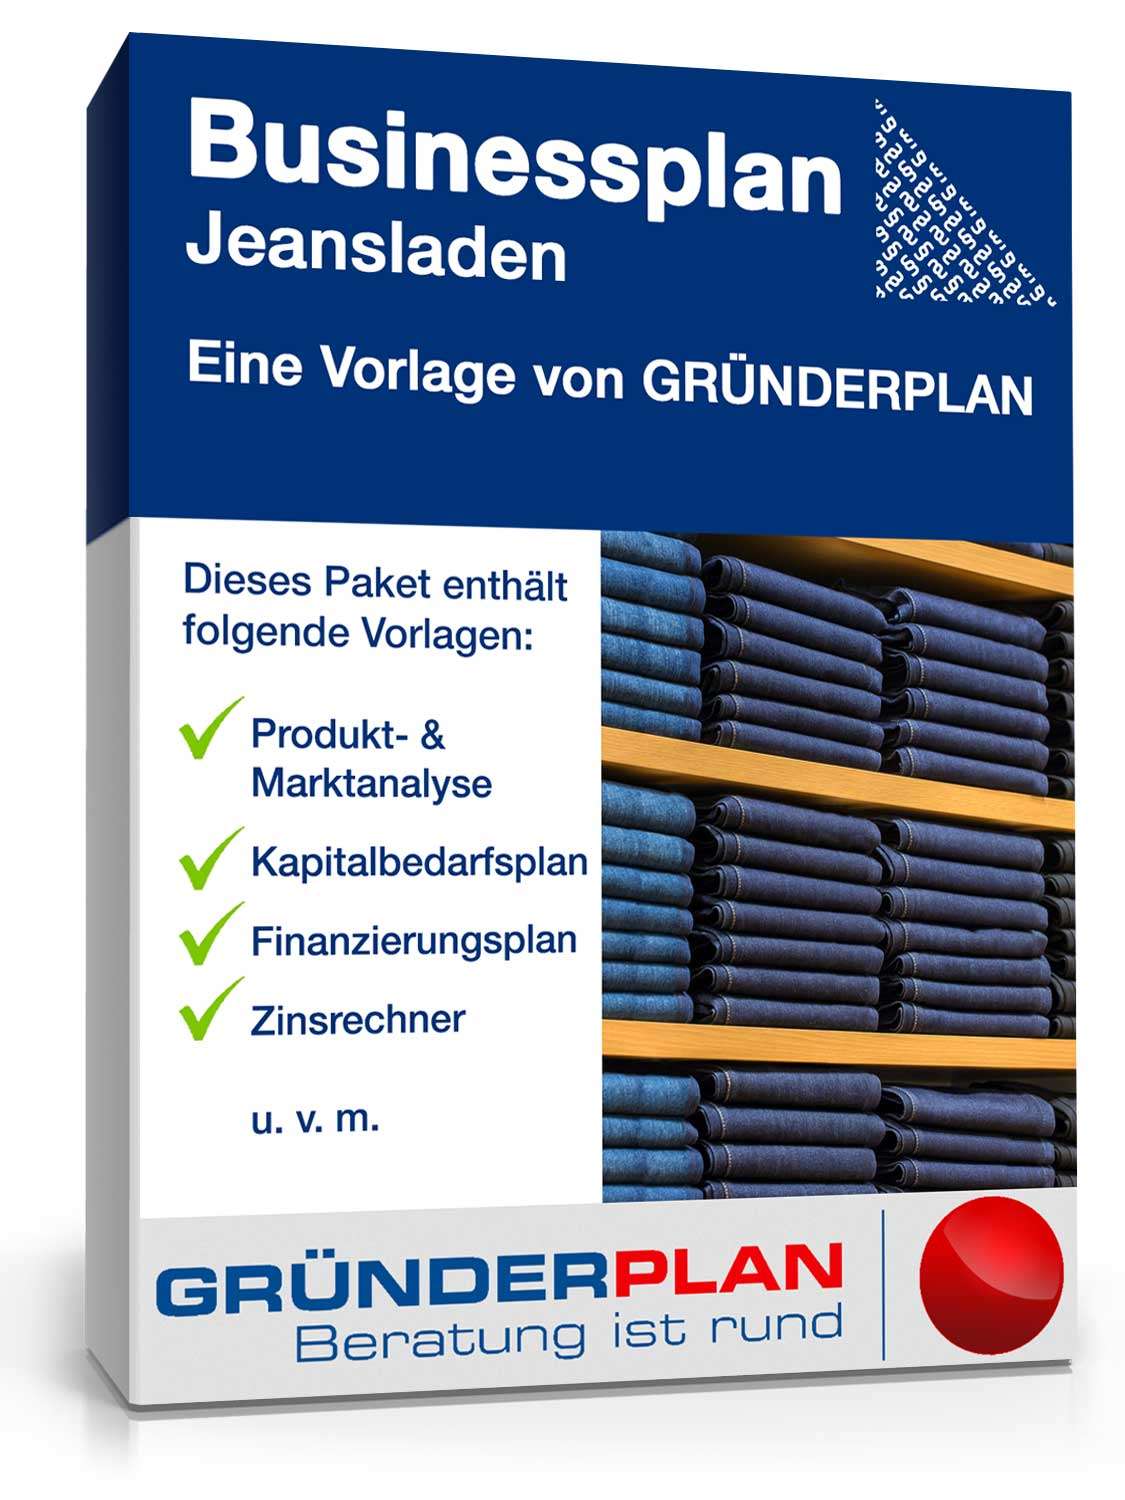 Hauptbild des Produkts: Businessplan Jeansladen von Gründerplan